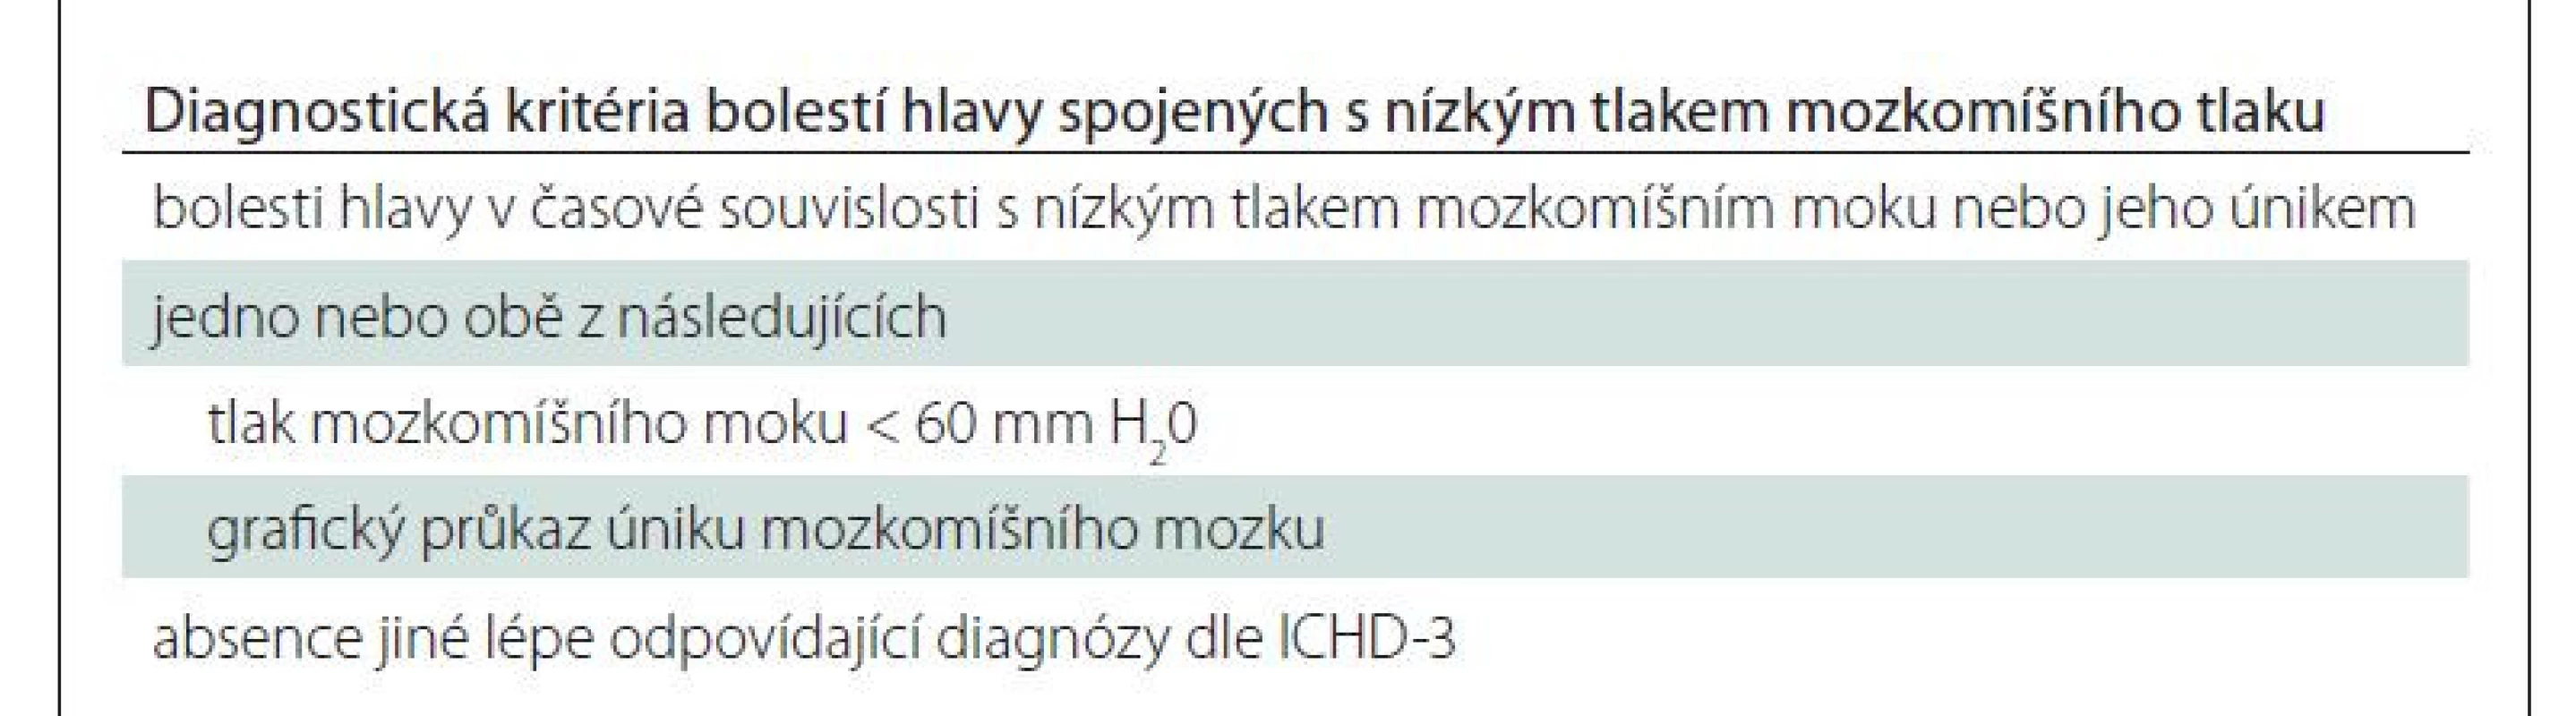 Diagnostická kritéria dle ICHID-3 [4].